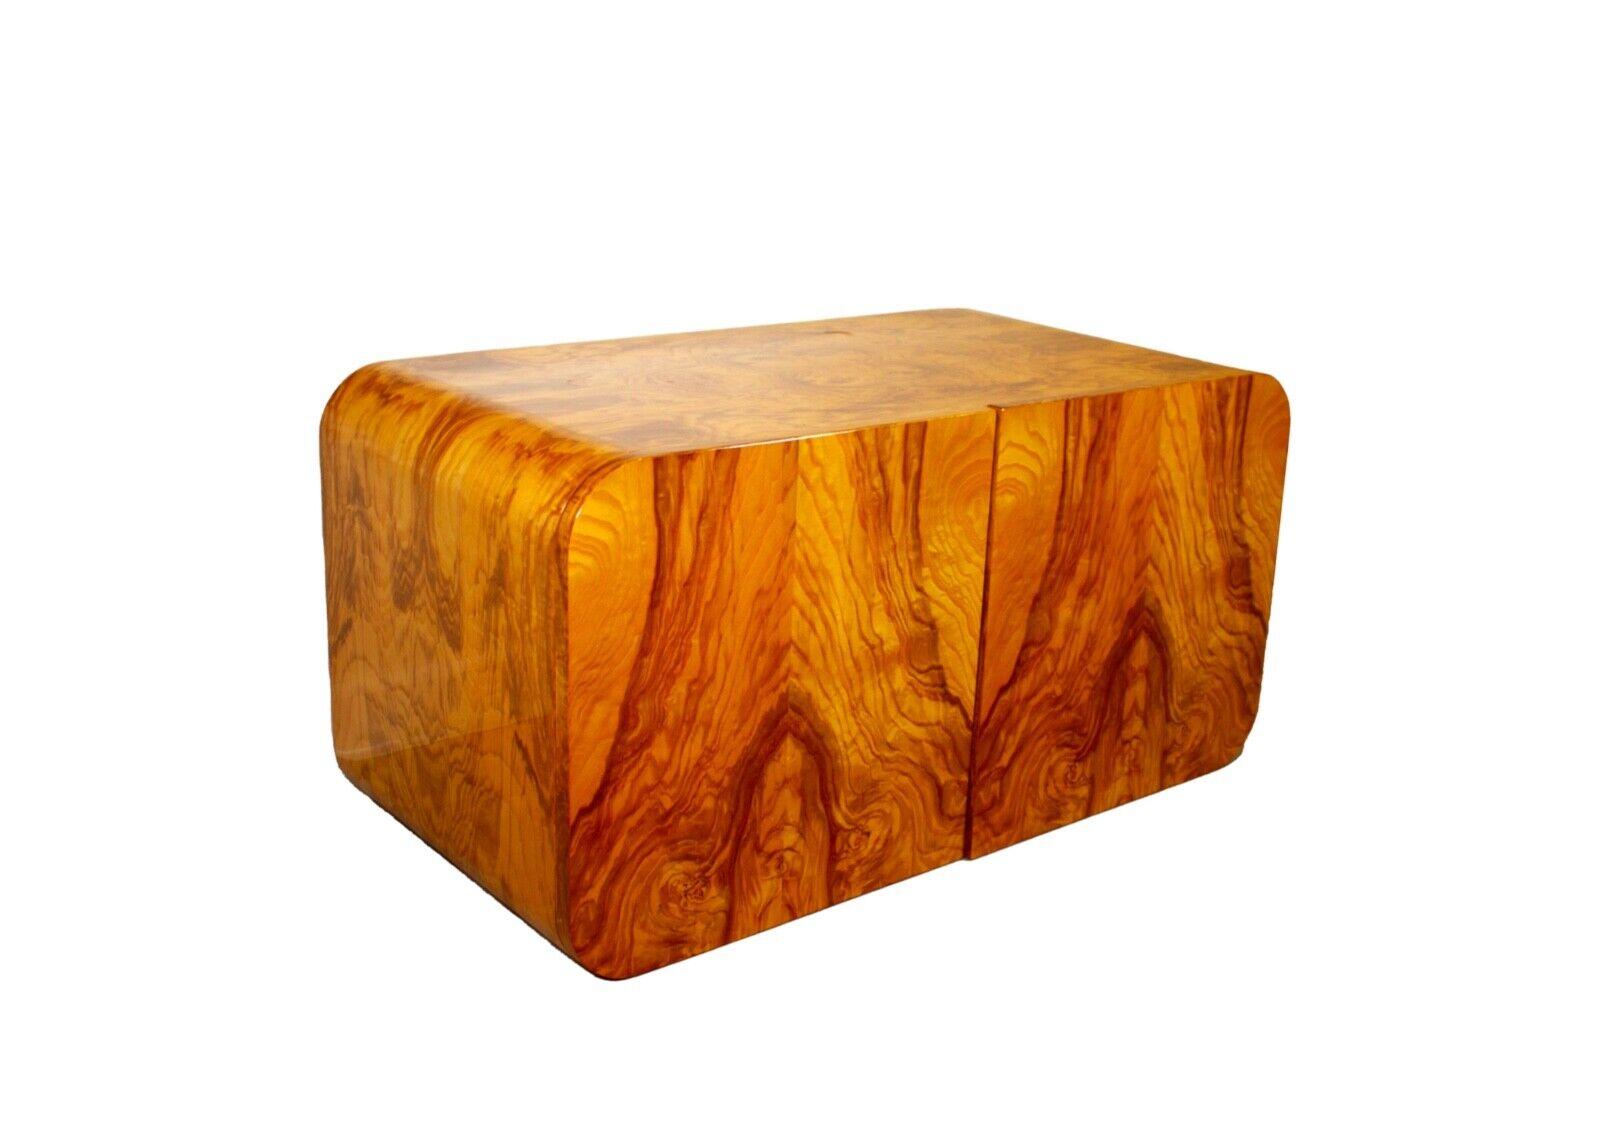 Cette superbe table de nuit flottante en bois de hêtre est le complément idéal de toute chambre à coucher. Fabriquée en bois de ronce massif, cette table de nuit est à la fois belle et fonctionnelle. Le design flottant libère un espace précieux au